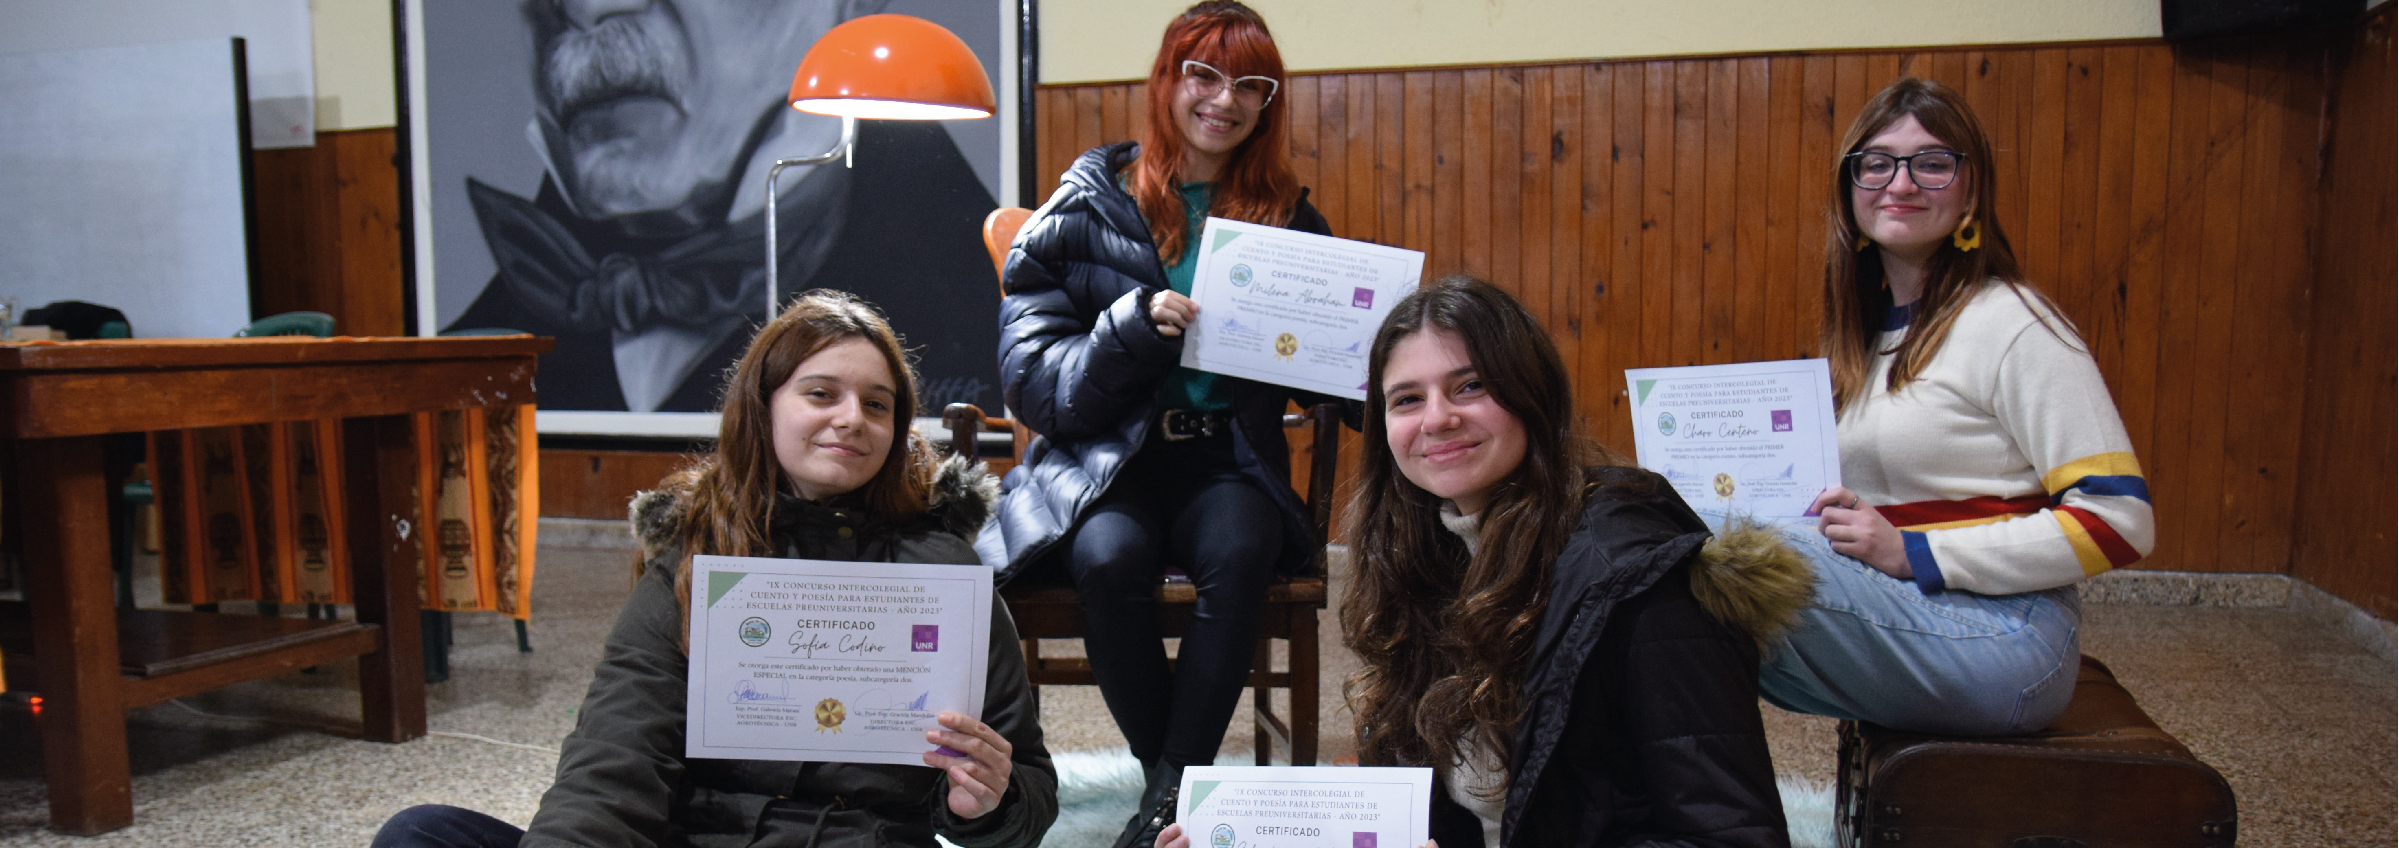 Entrega de premios del IX Concurso Intercolegial de Cuento y Poesía